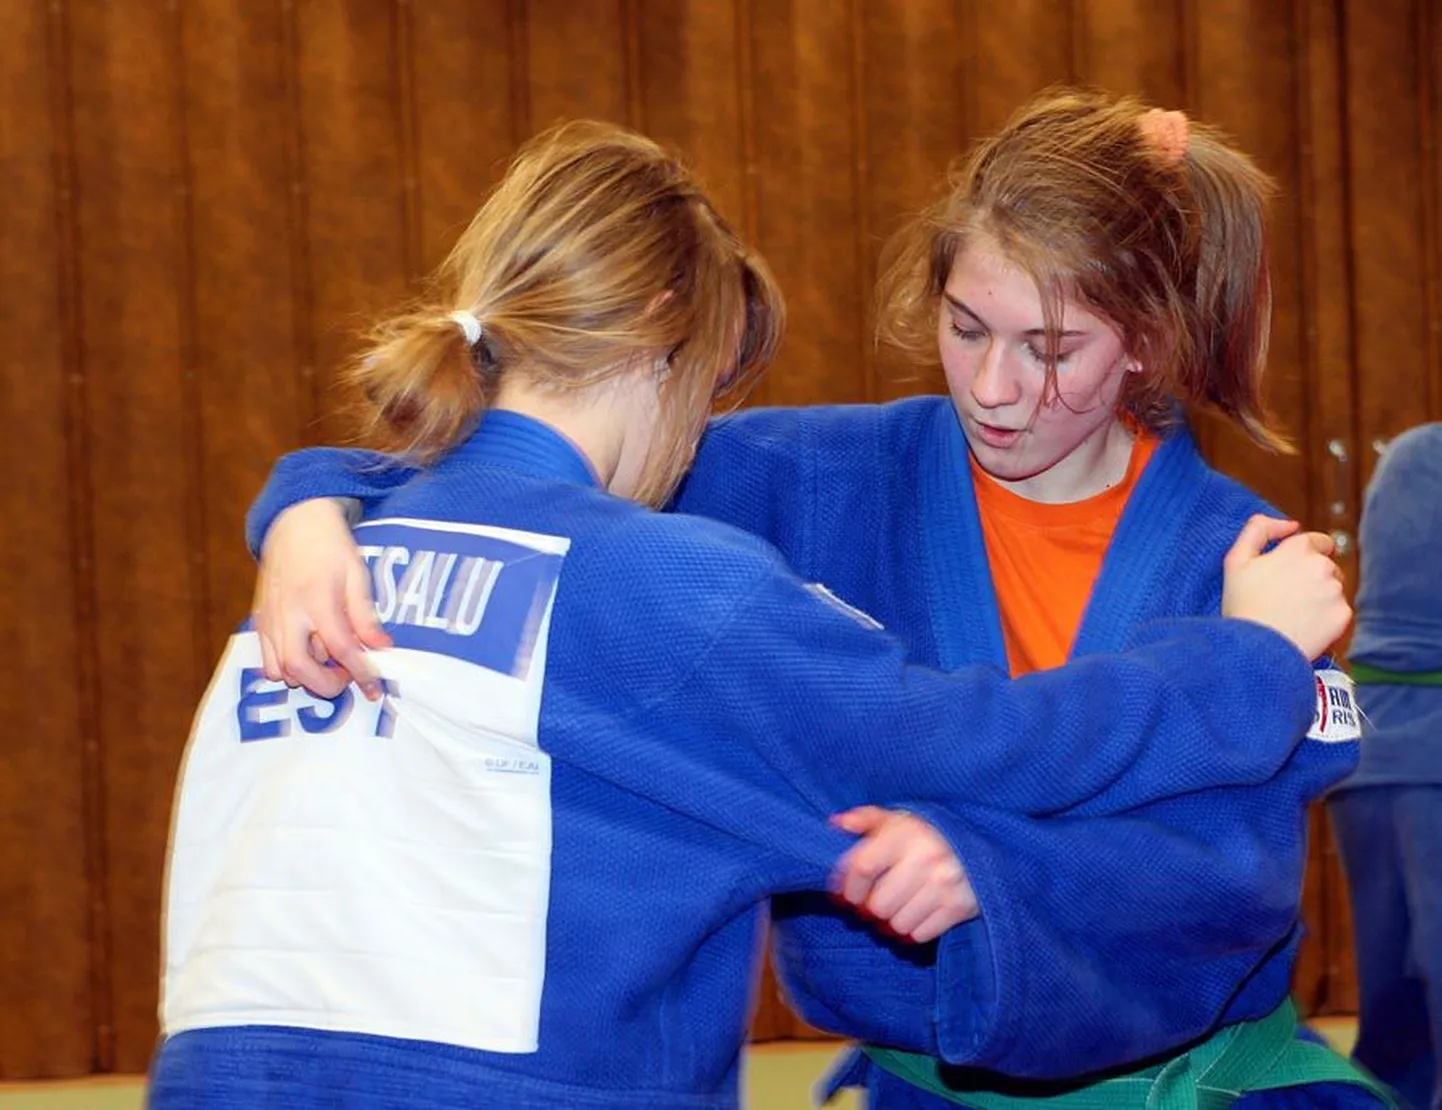 oli üks kolmest Tartu sügisturniiril võidutsenud Viljandi judokast. Pilt on tehtud Viljandis treeningul, kus tema sparringupartneriks on Pille-Riin Lahesalu.